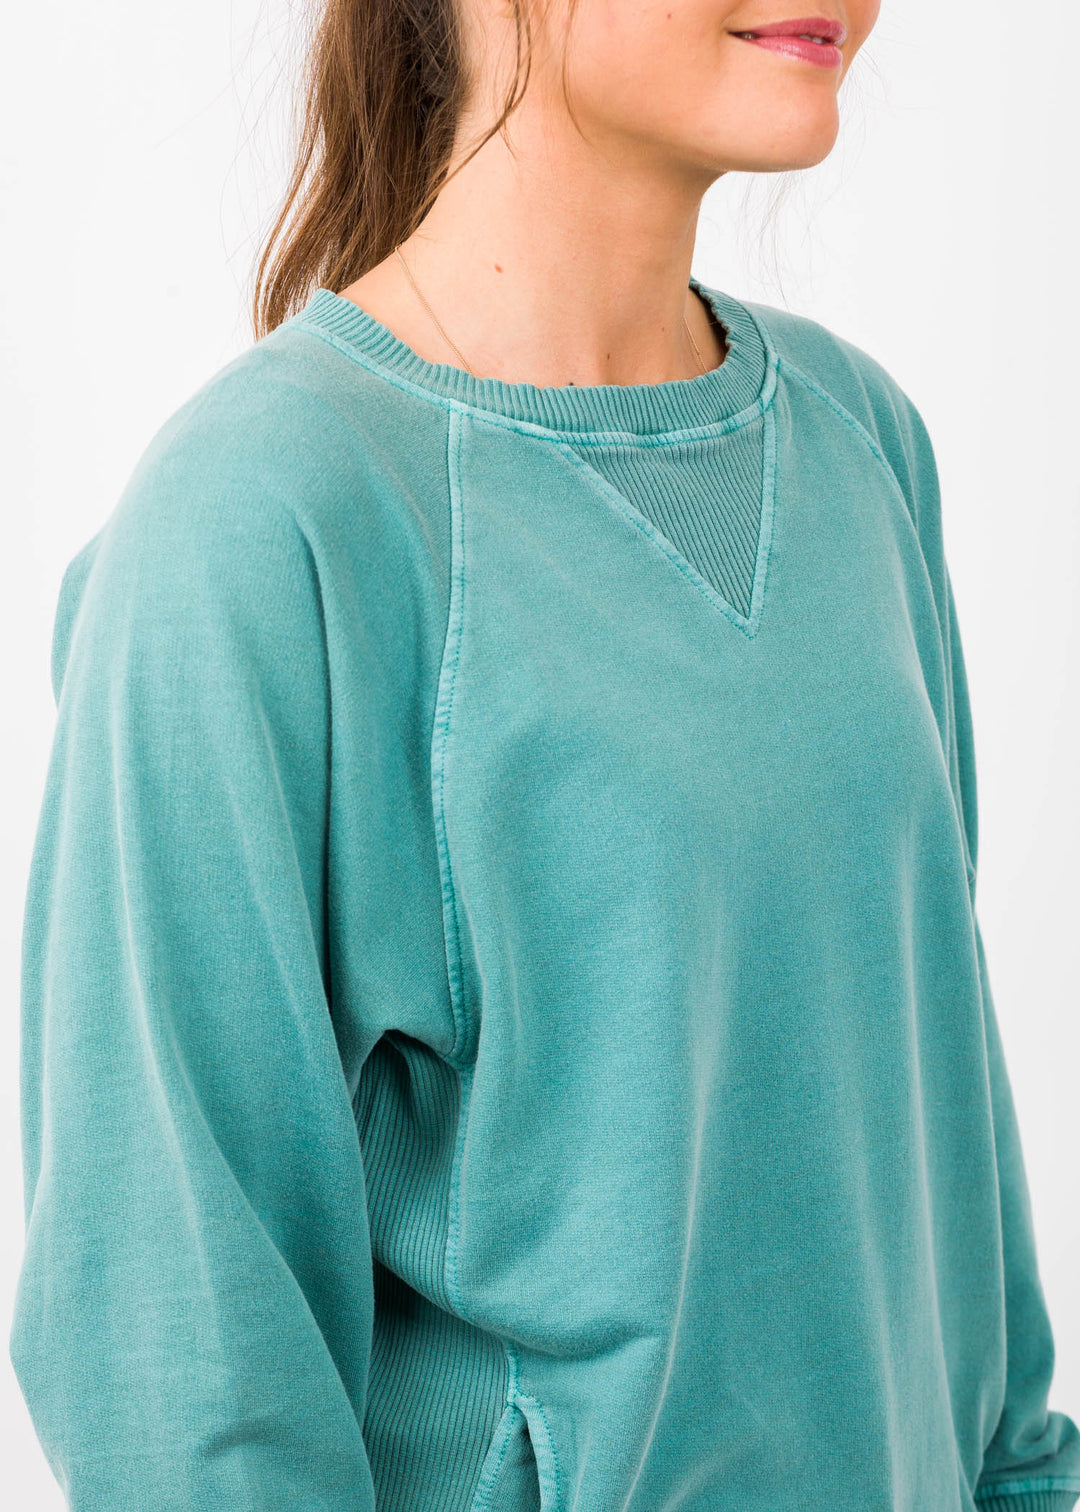 Zen French Terry Sweatshirt (Turquoise)